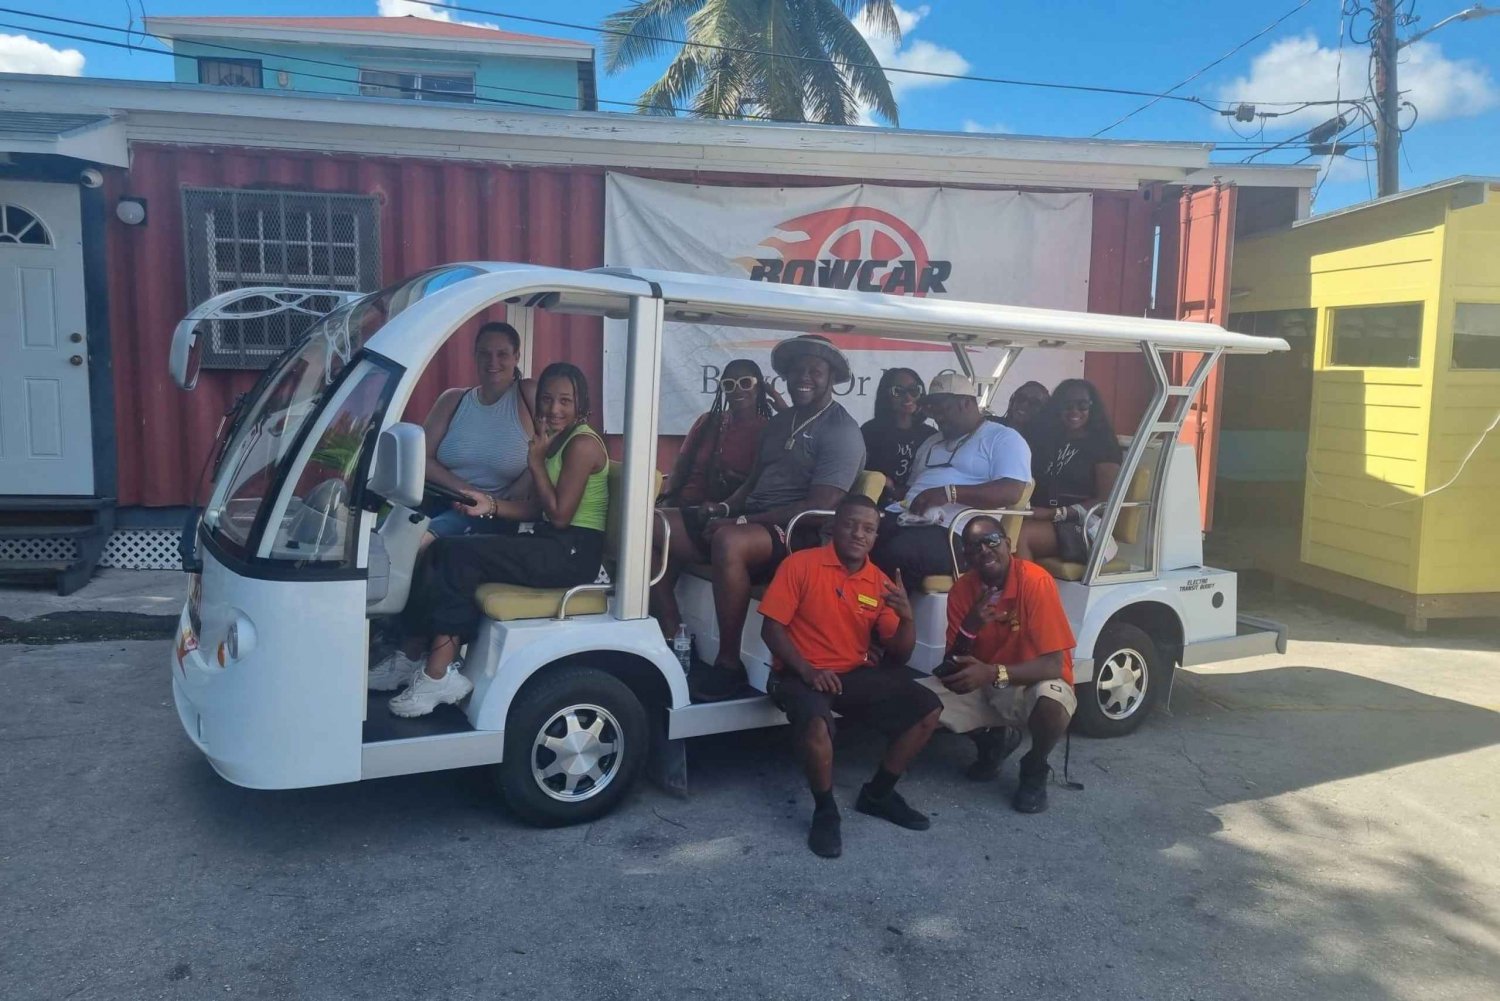 Nassau,Bahamas: Elektrisk busstur,lokala mat- och dryckesprover